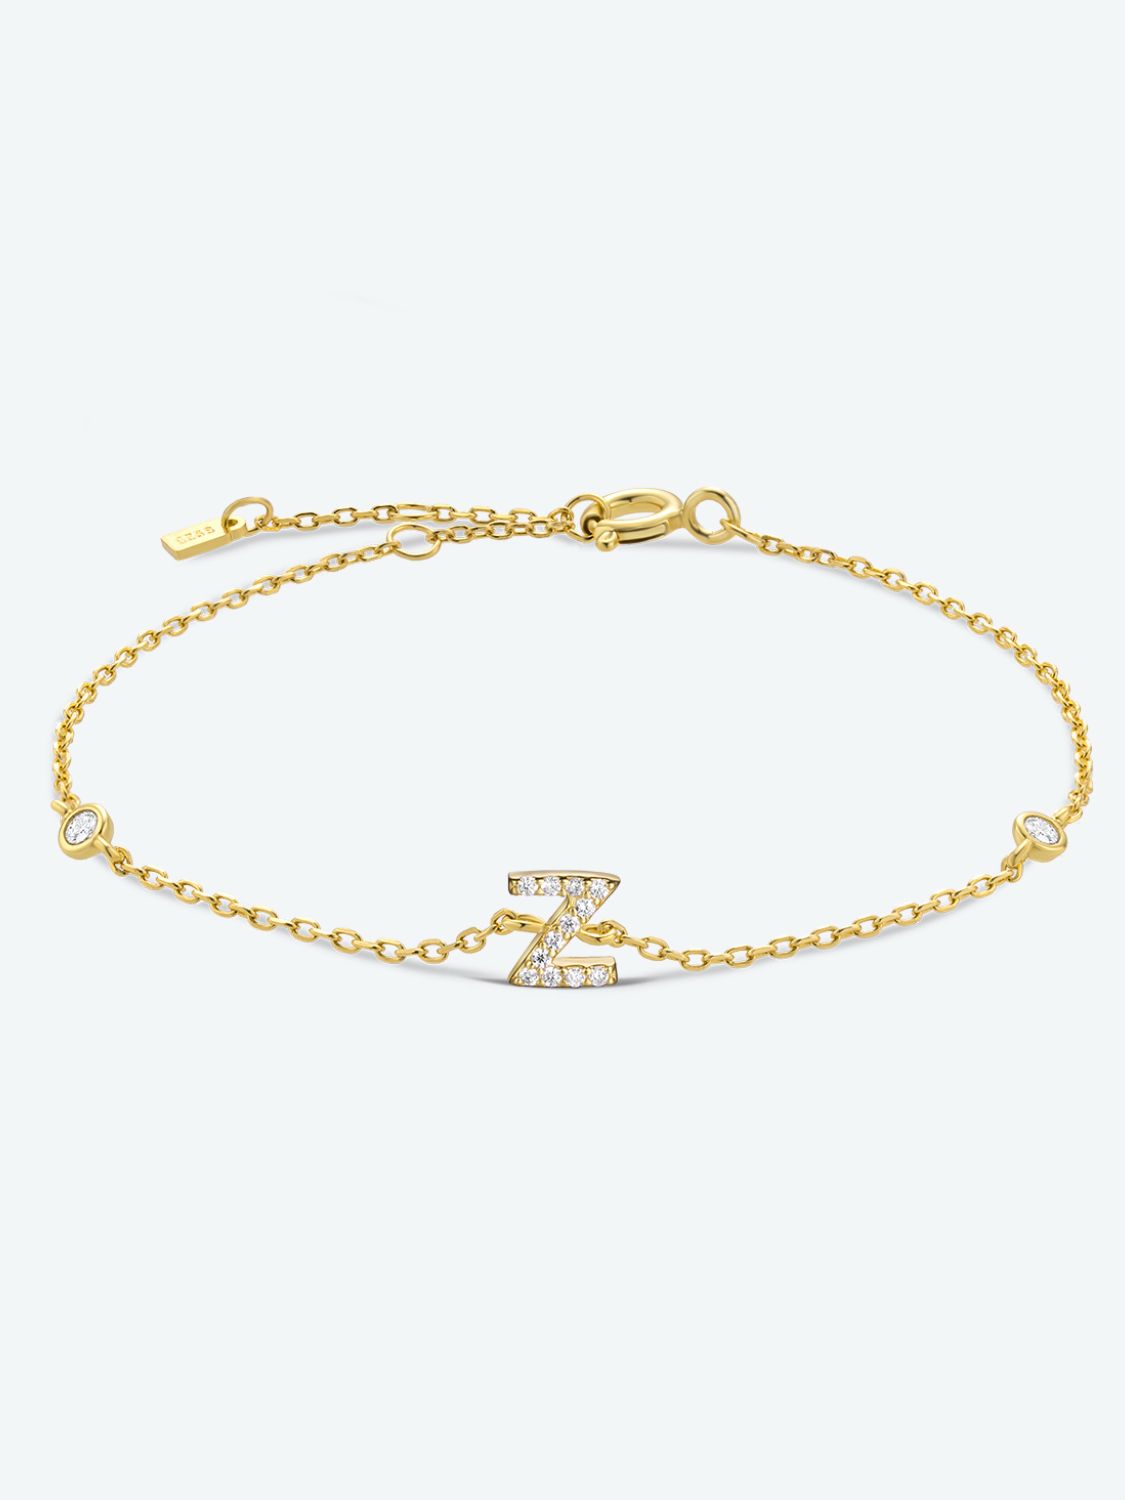 V To Z Zircon 925 Sterling Silver Bracelet - Z/Gold / One Size - Women’s Jewelry - Bracelets - 25 - 2024